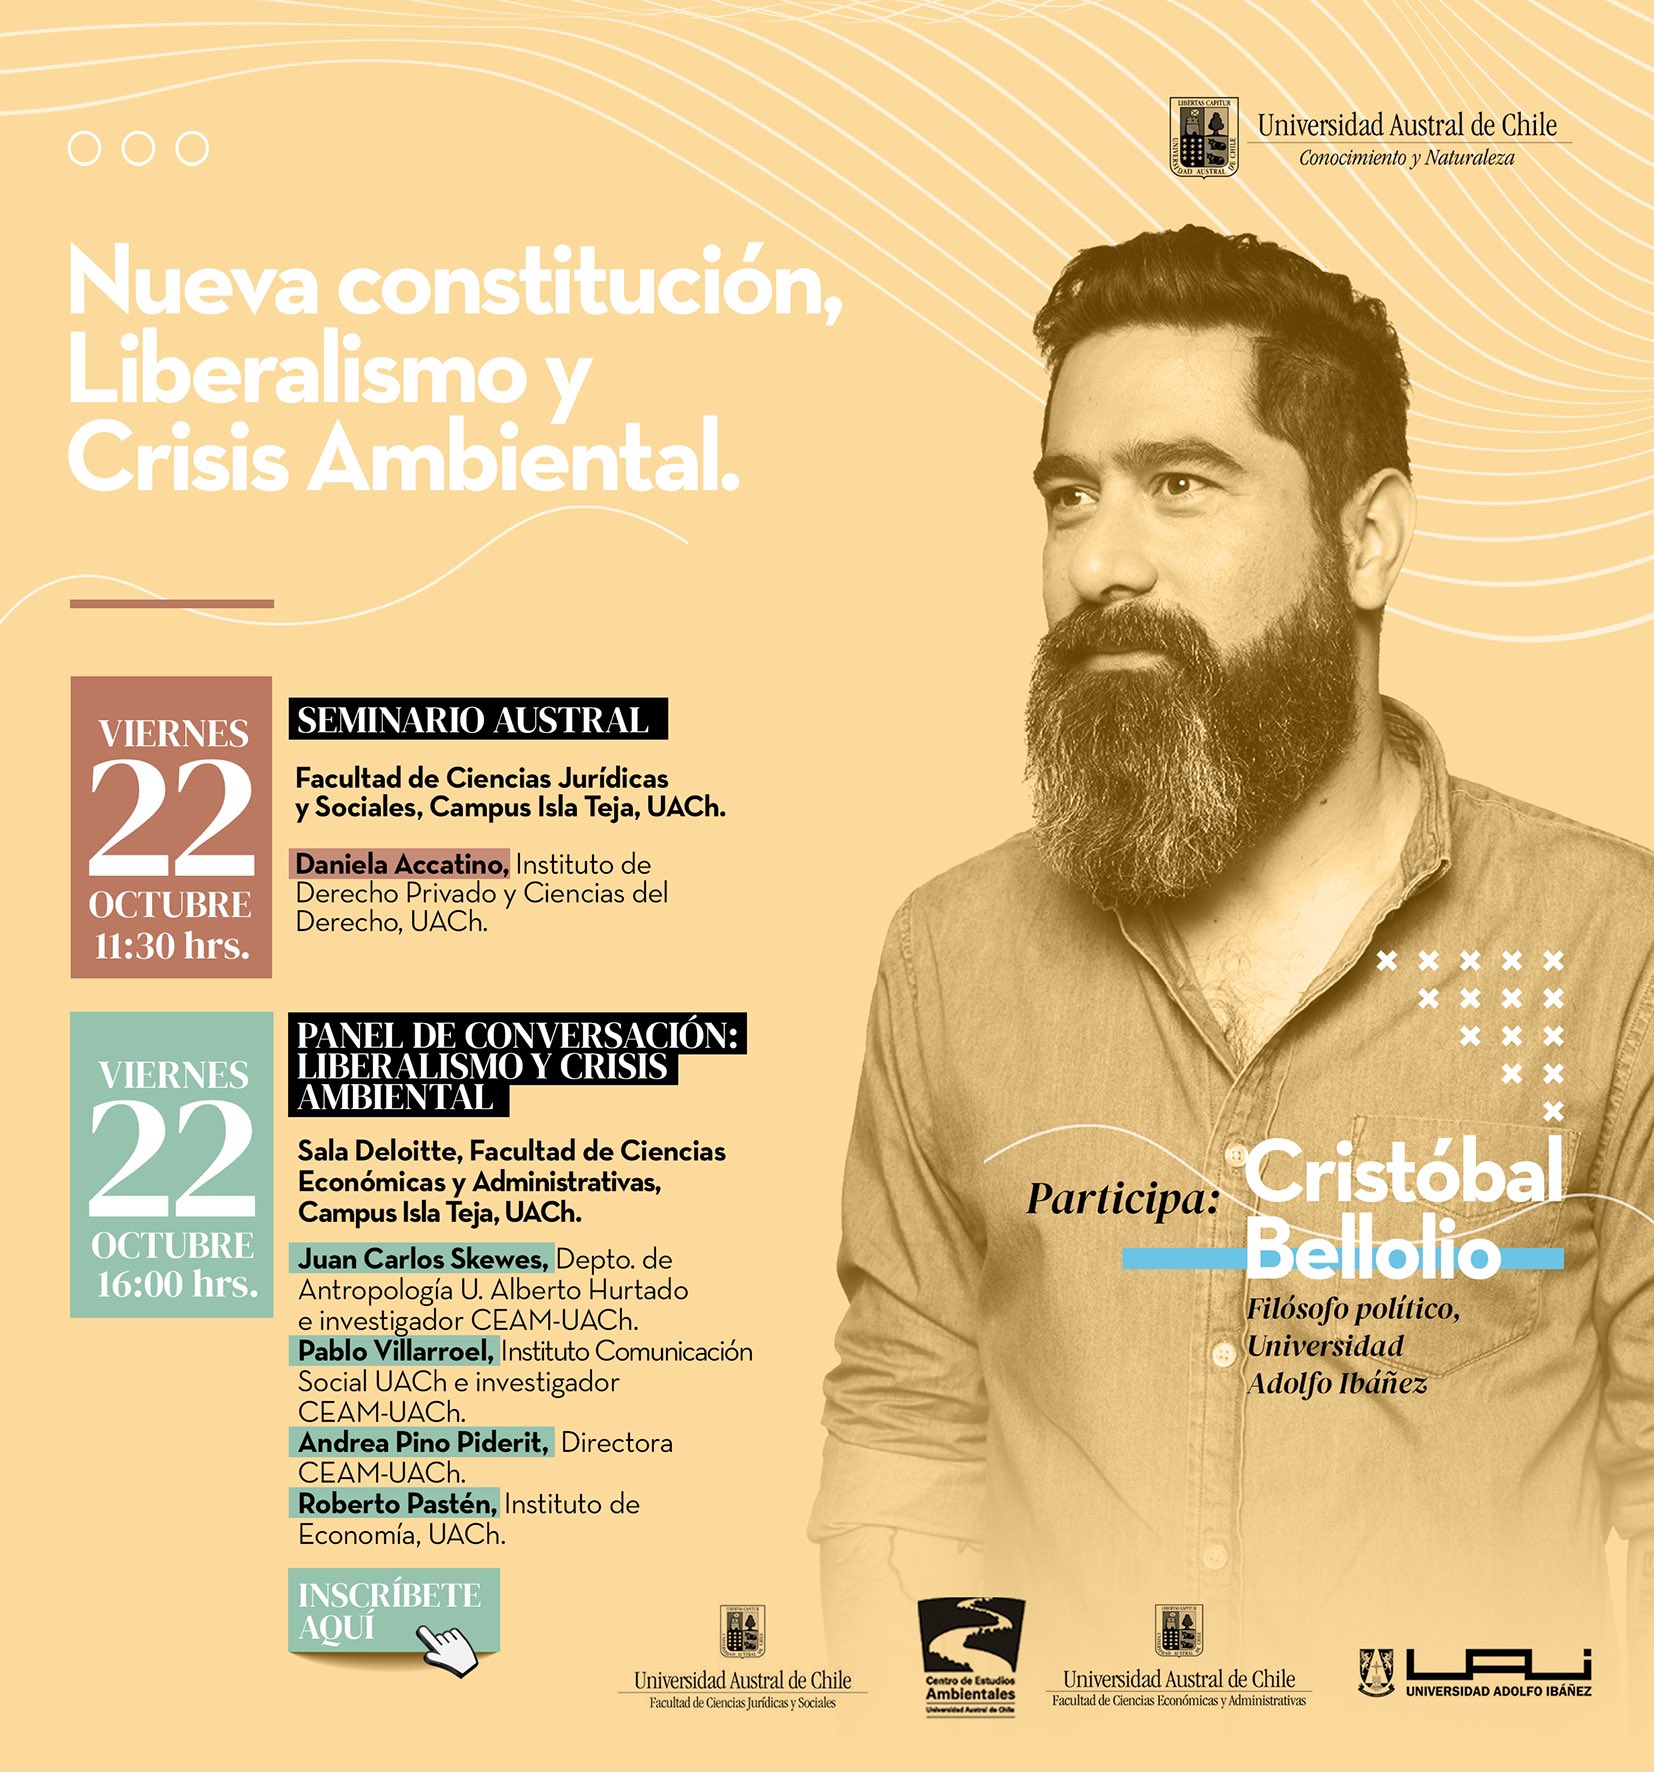 La Universidad Austral de Chile invita al seminario y panel de conversación: “Nueva Constitución, Liberalismo y Crisis Ambiental”